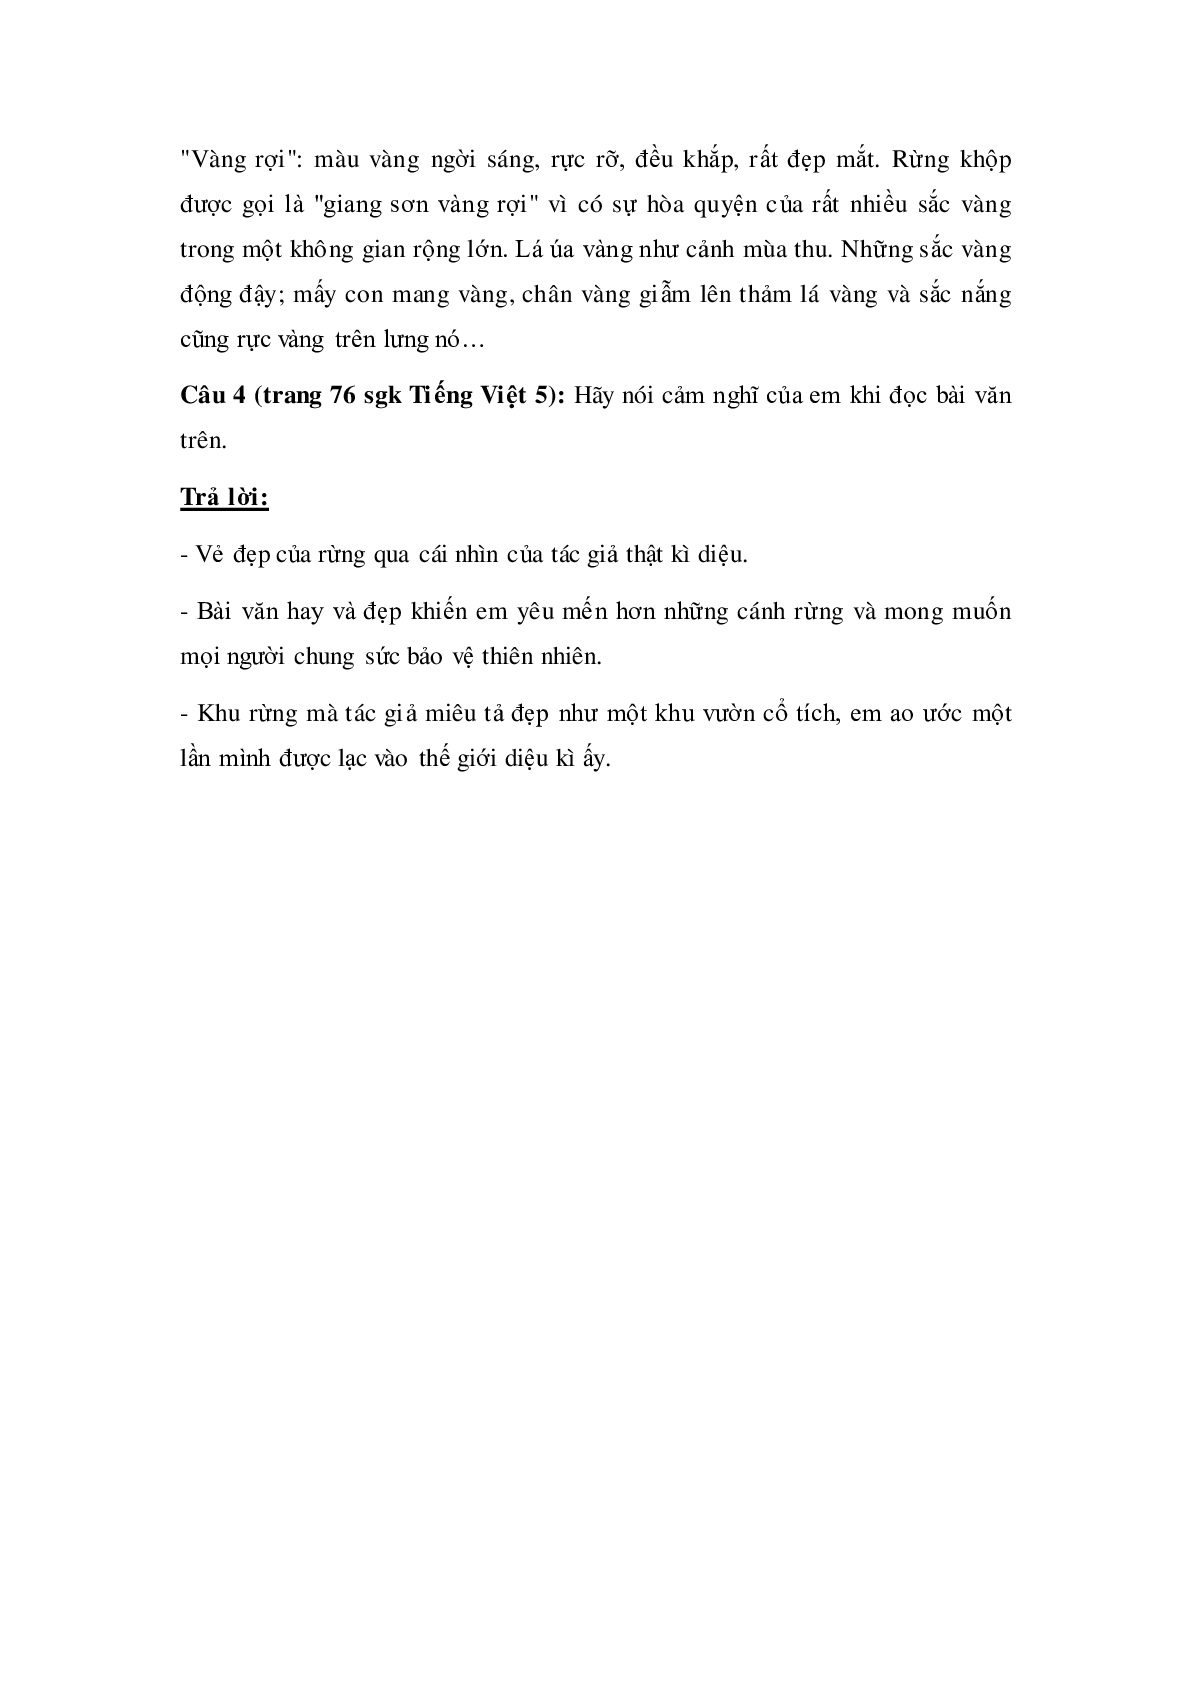 Soạn Tiếng Việt lớp 5: Tập đọc: Kì diệu rừng xanh mới nhất (trang 3)